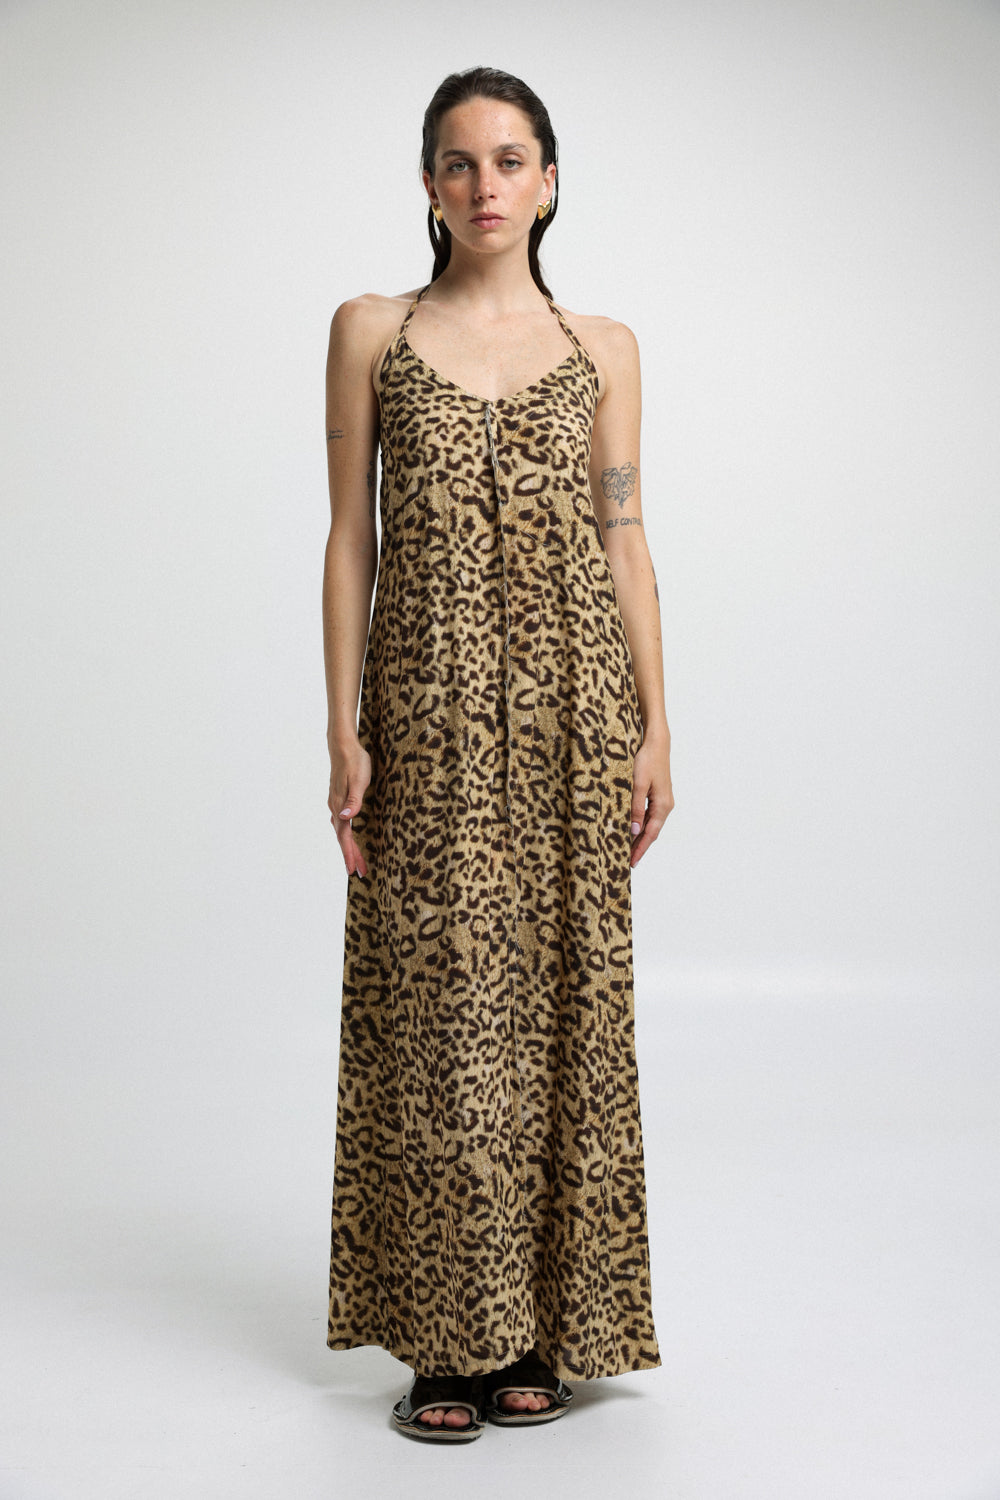 Trouble Leopard Dress